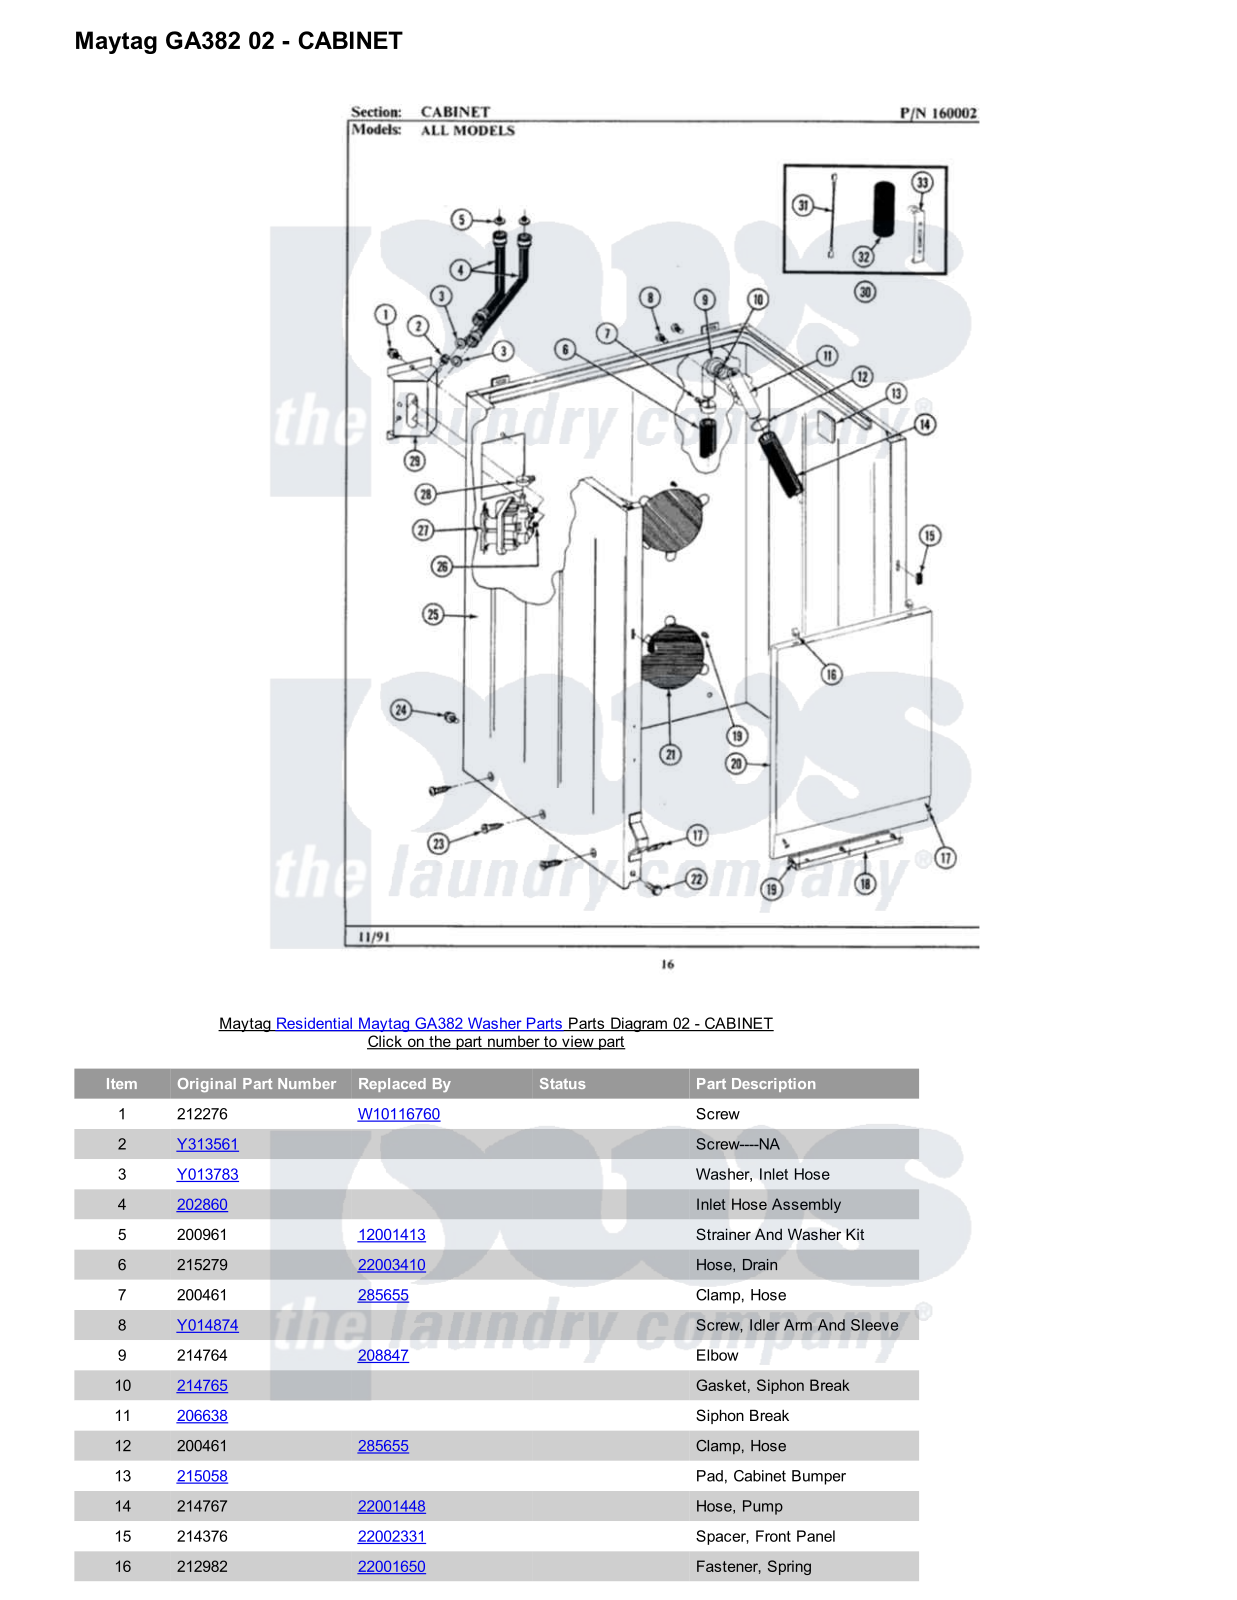 Maytag GA382 Parts Diagram